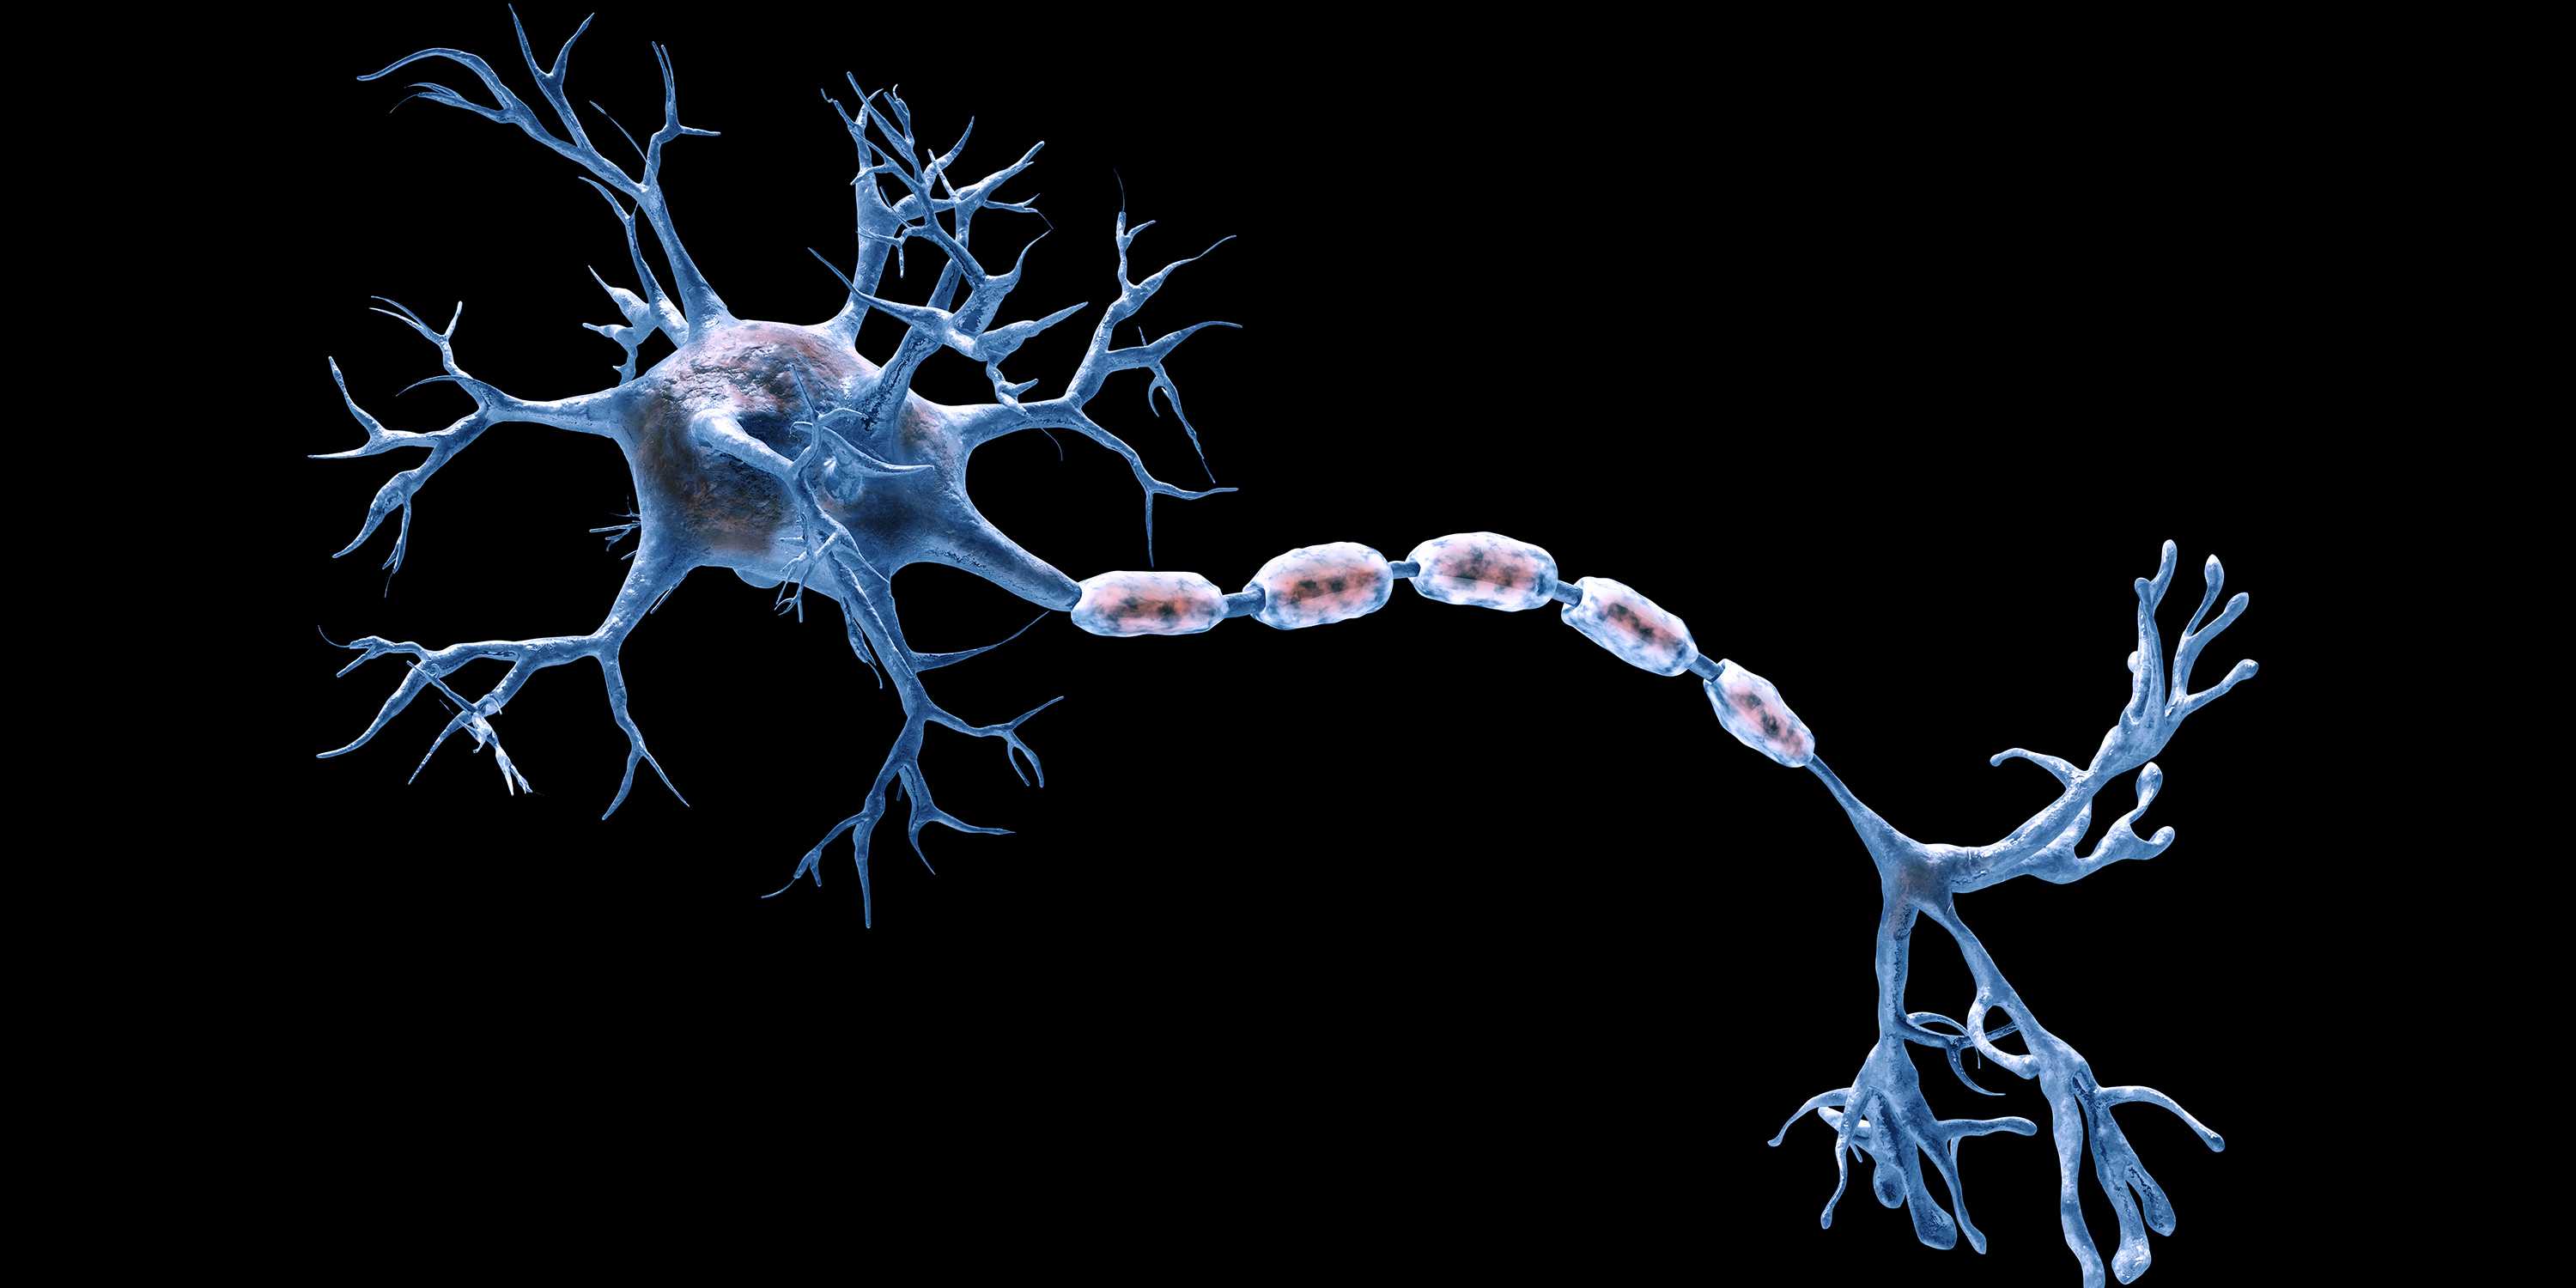 Illustration of nerve fibers against a black background.